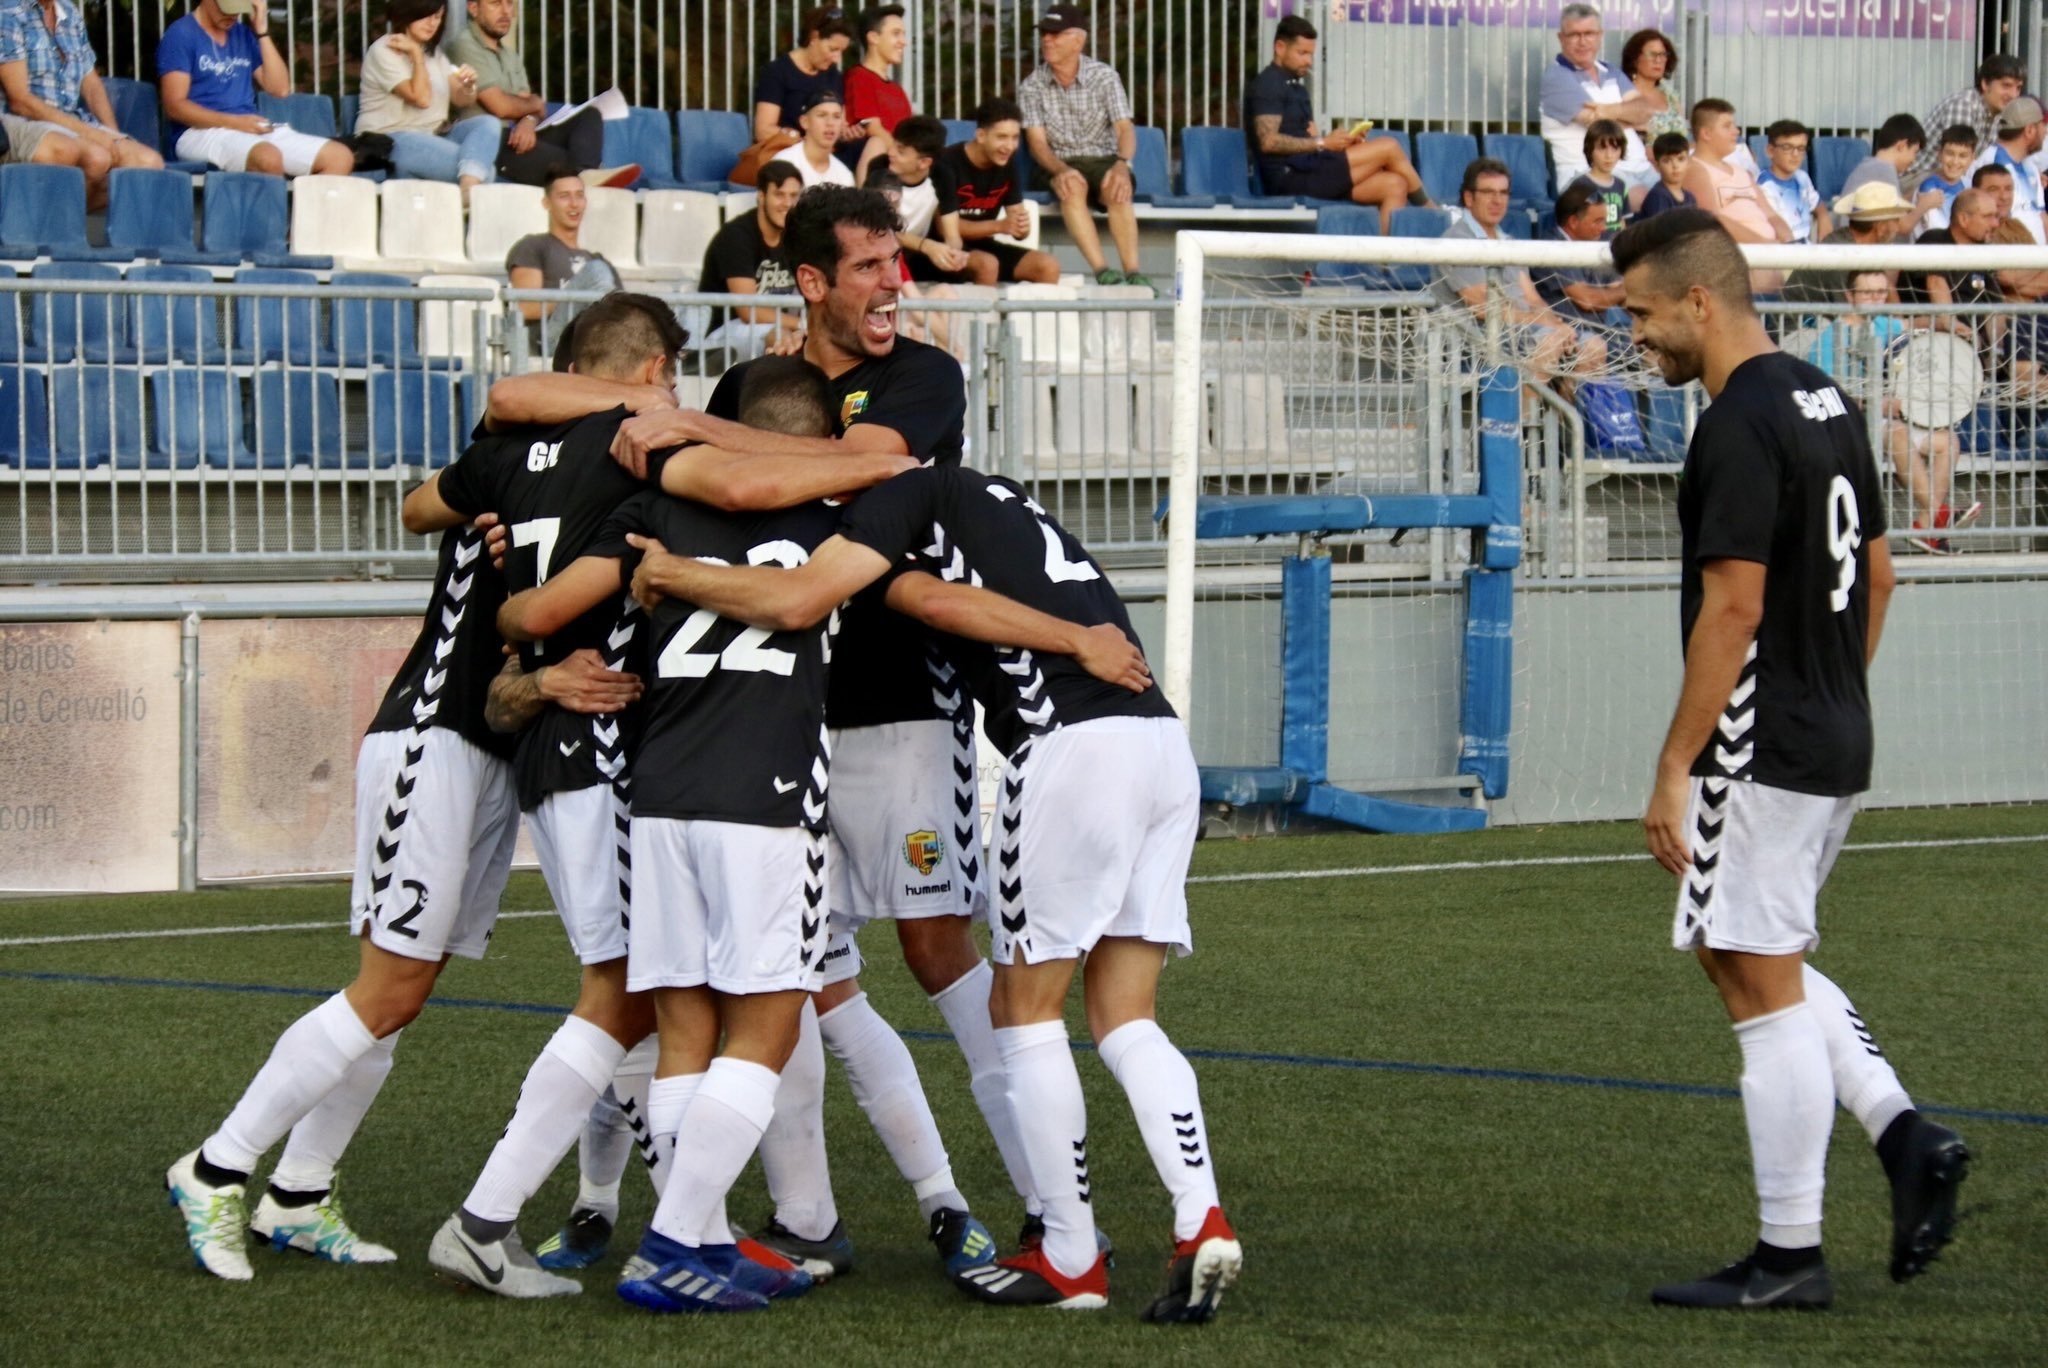 El Llagostera, l'equip català més en forma en l'inici de la temporada a Segona B